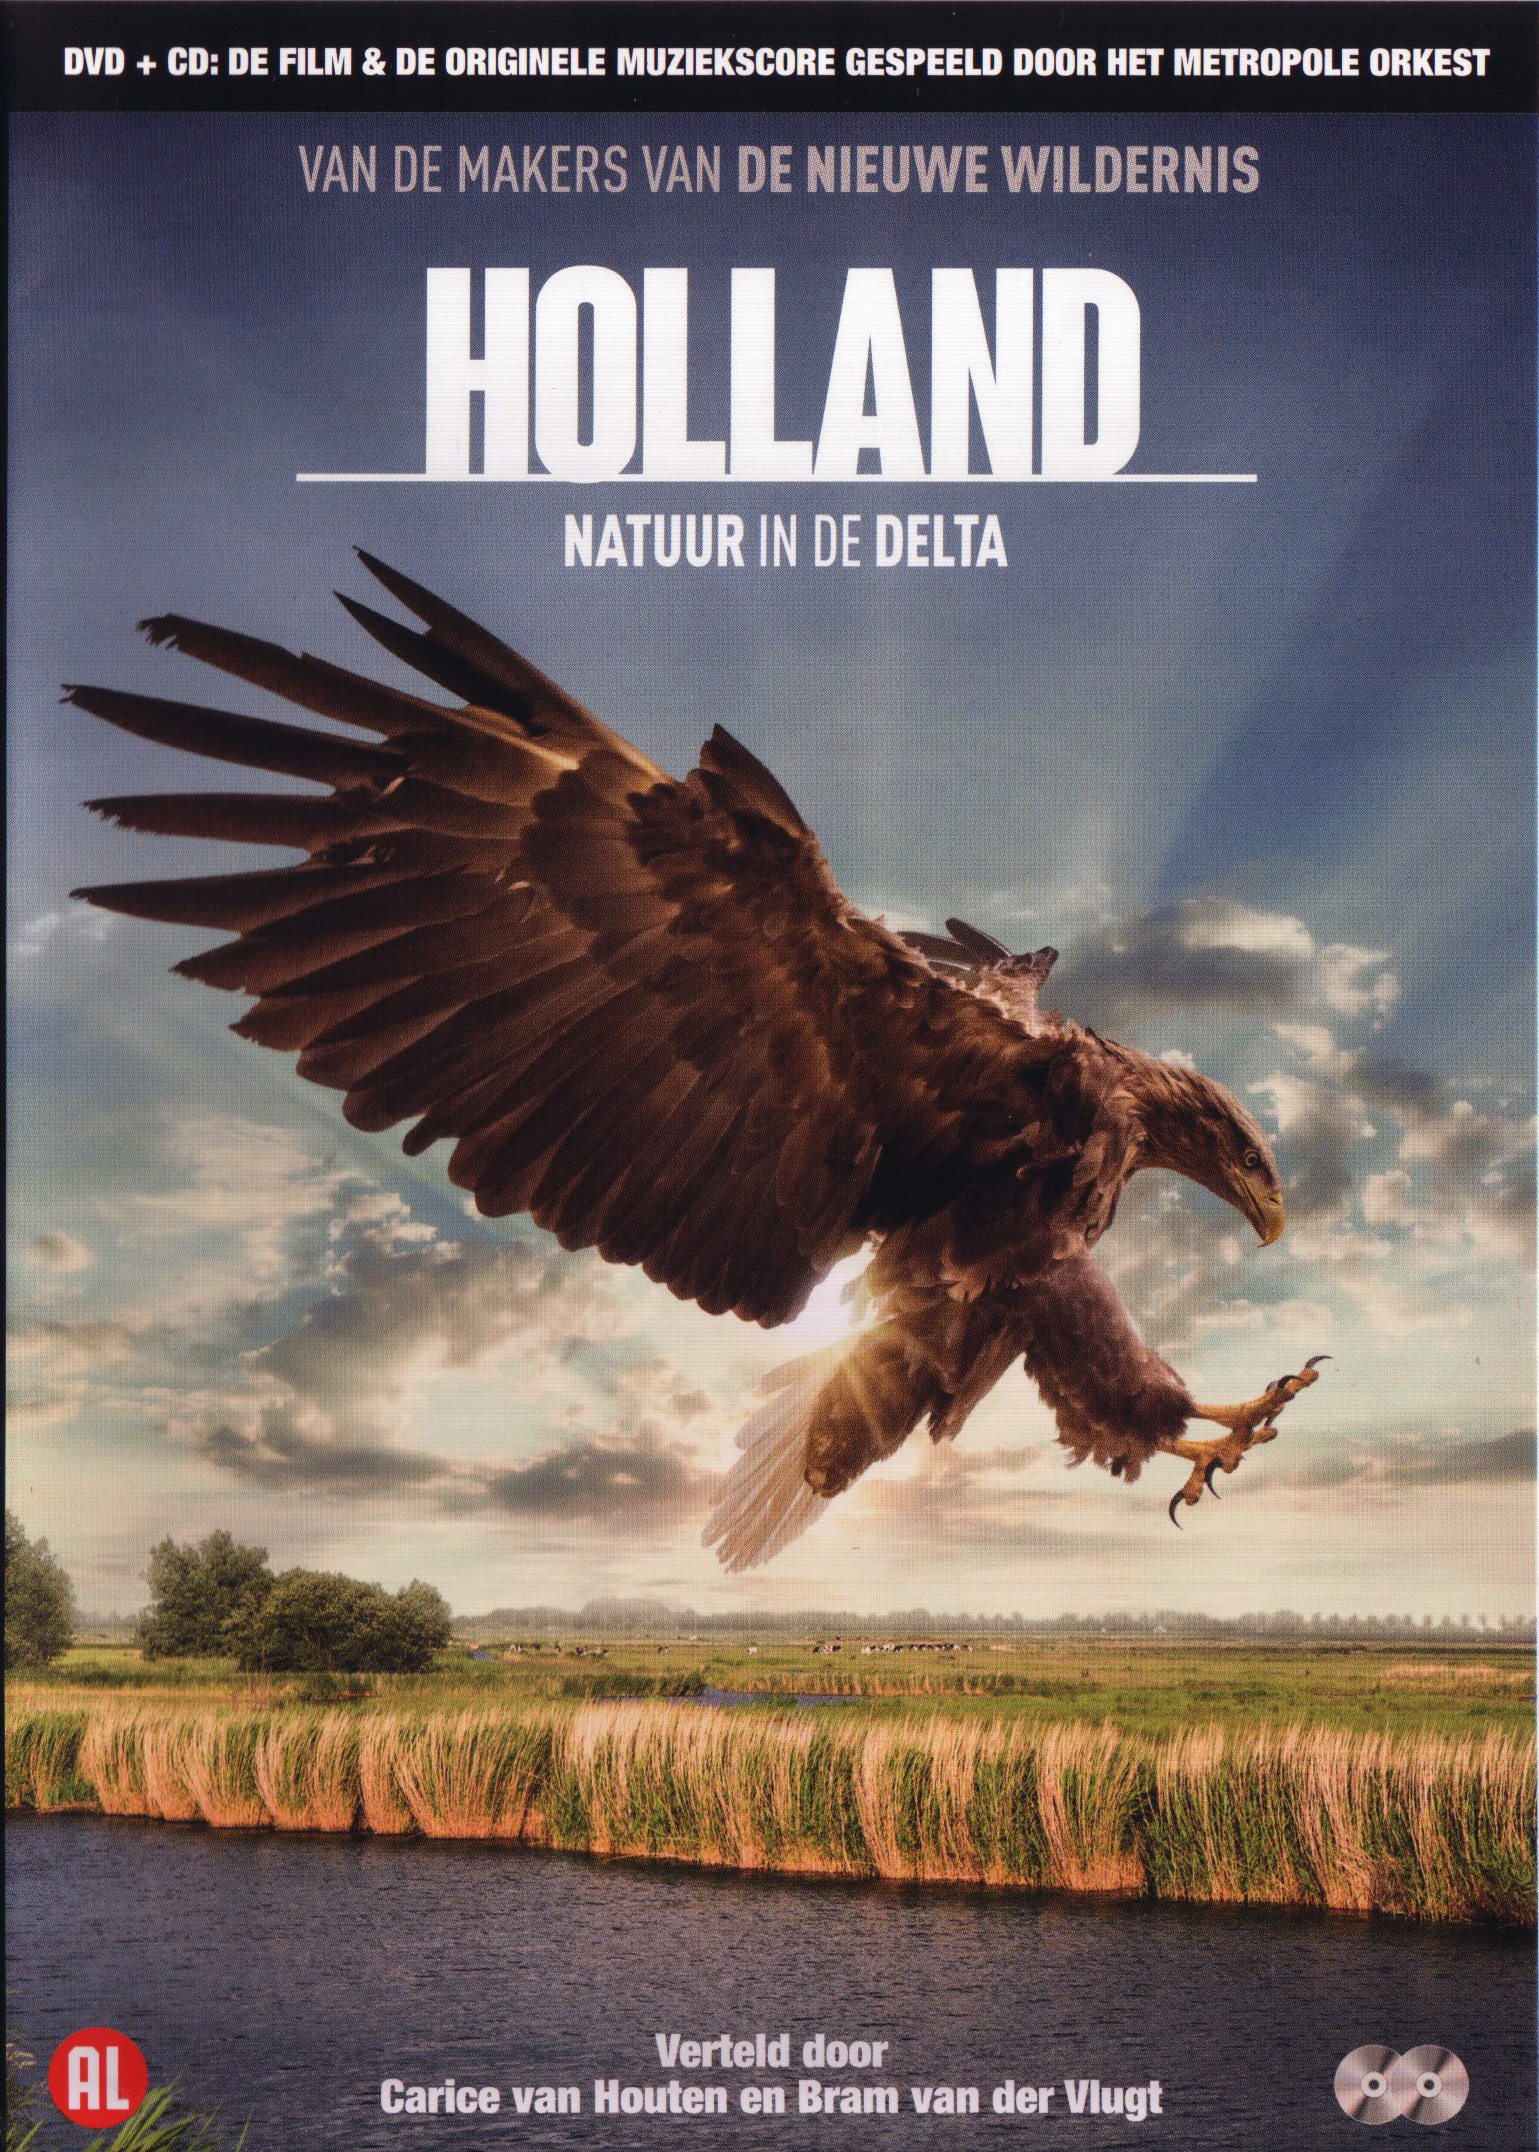 herhaling Schrijfmachine Accor Holland: Natuur in de Delta (DVD) recensie - ​Allesoverfilm.nl |  filmrecensies, hardware reviews, nieuws en nog veel meer...